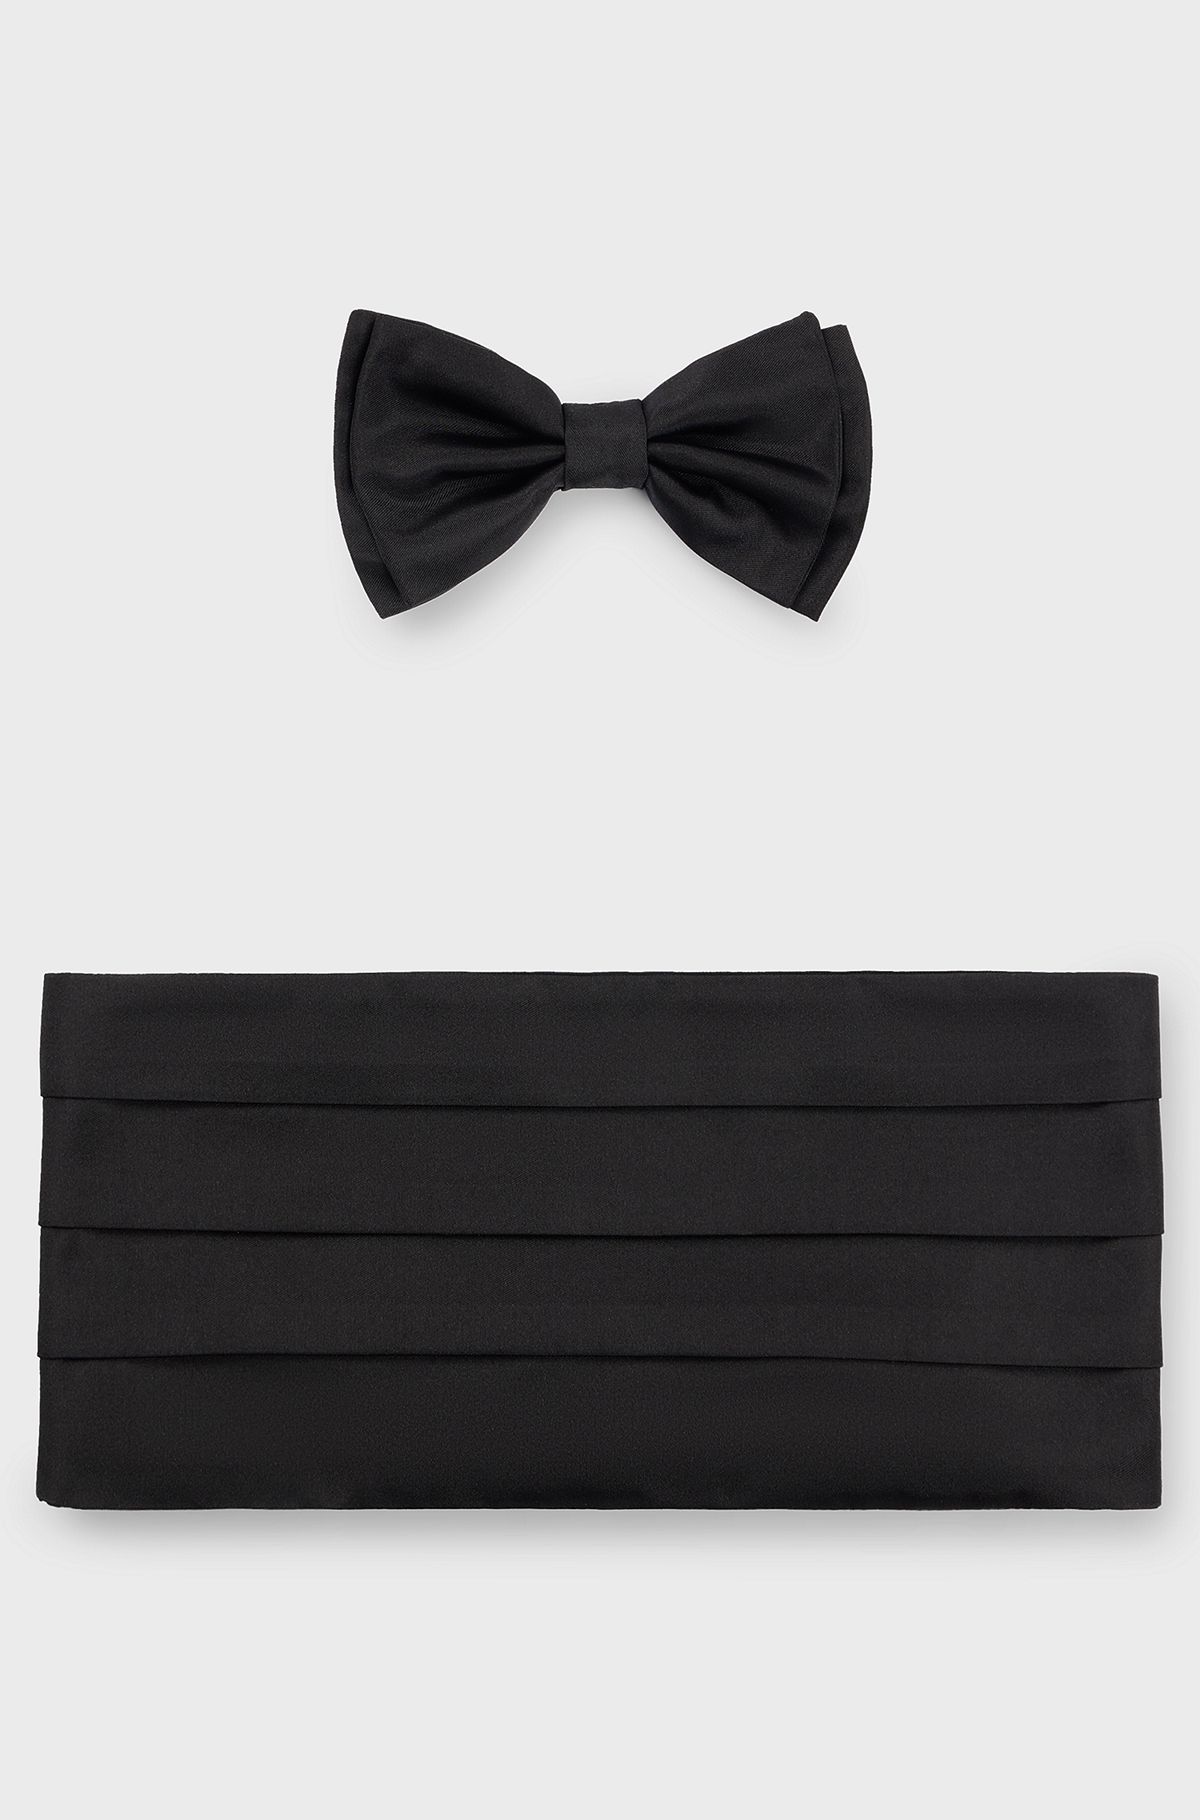 Silk bow tie and cummerbund gift set, Black